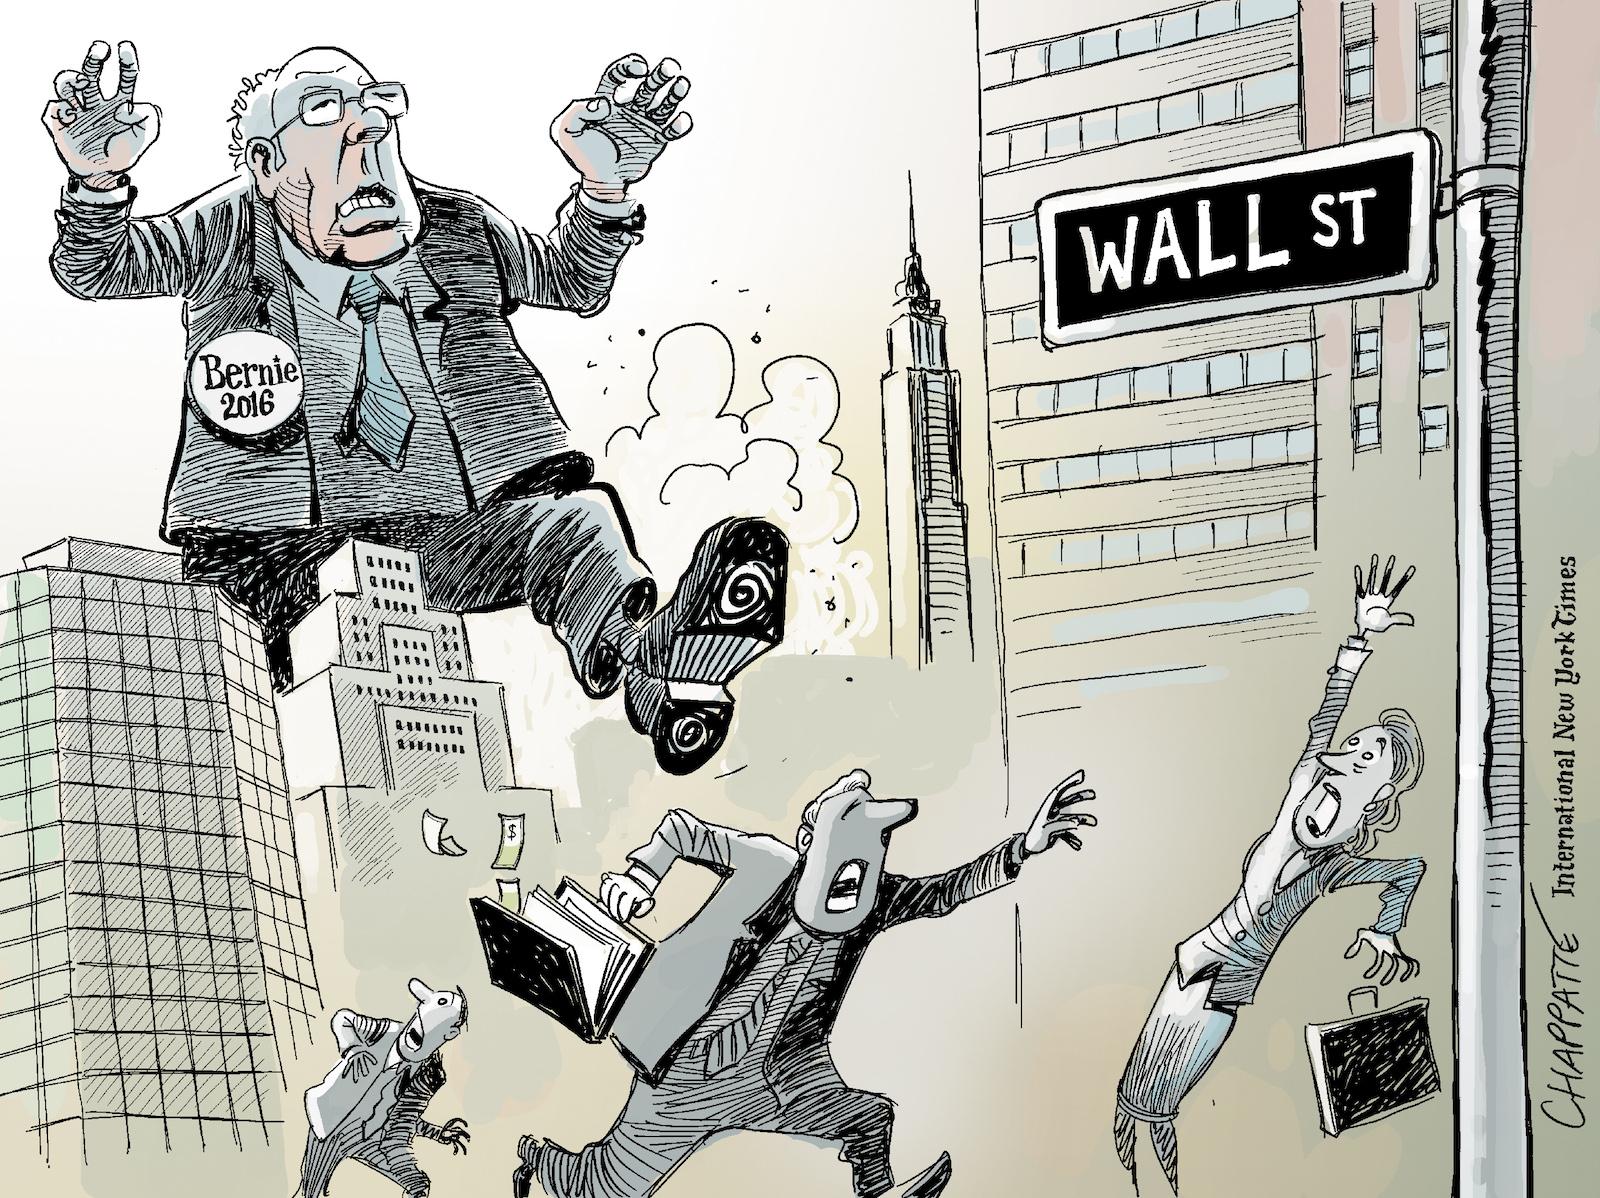 Bernie Sanders goes to Wall Street